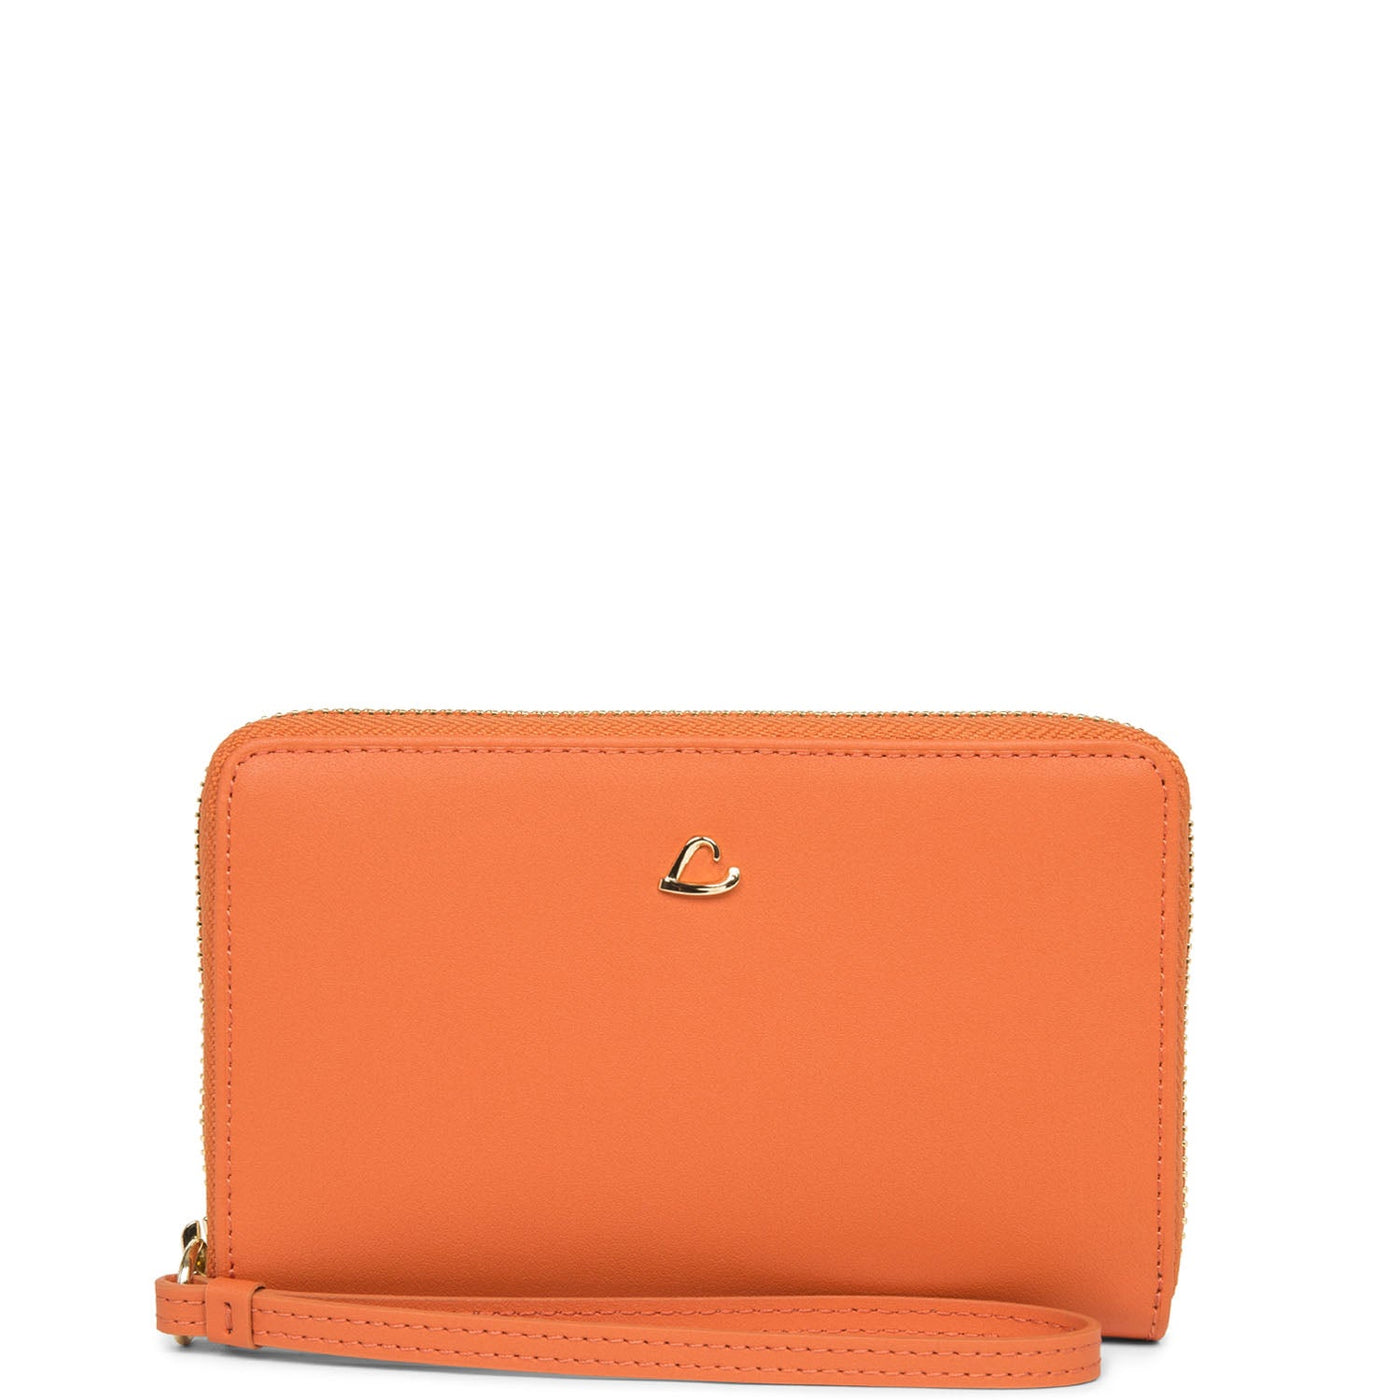 wallet - city philos #couleur_orange